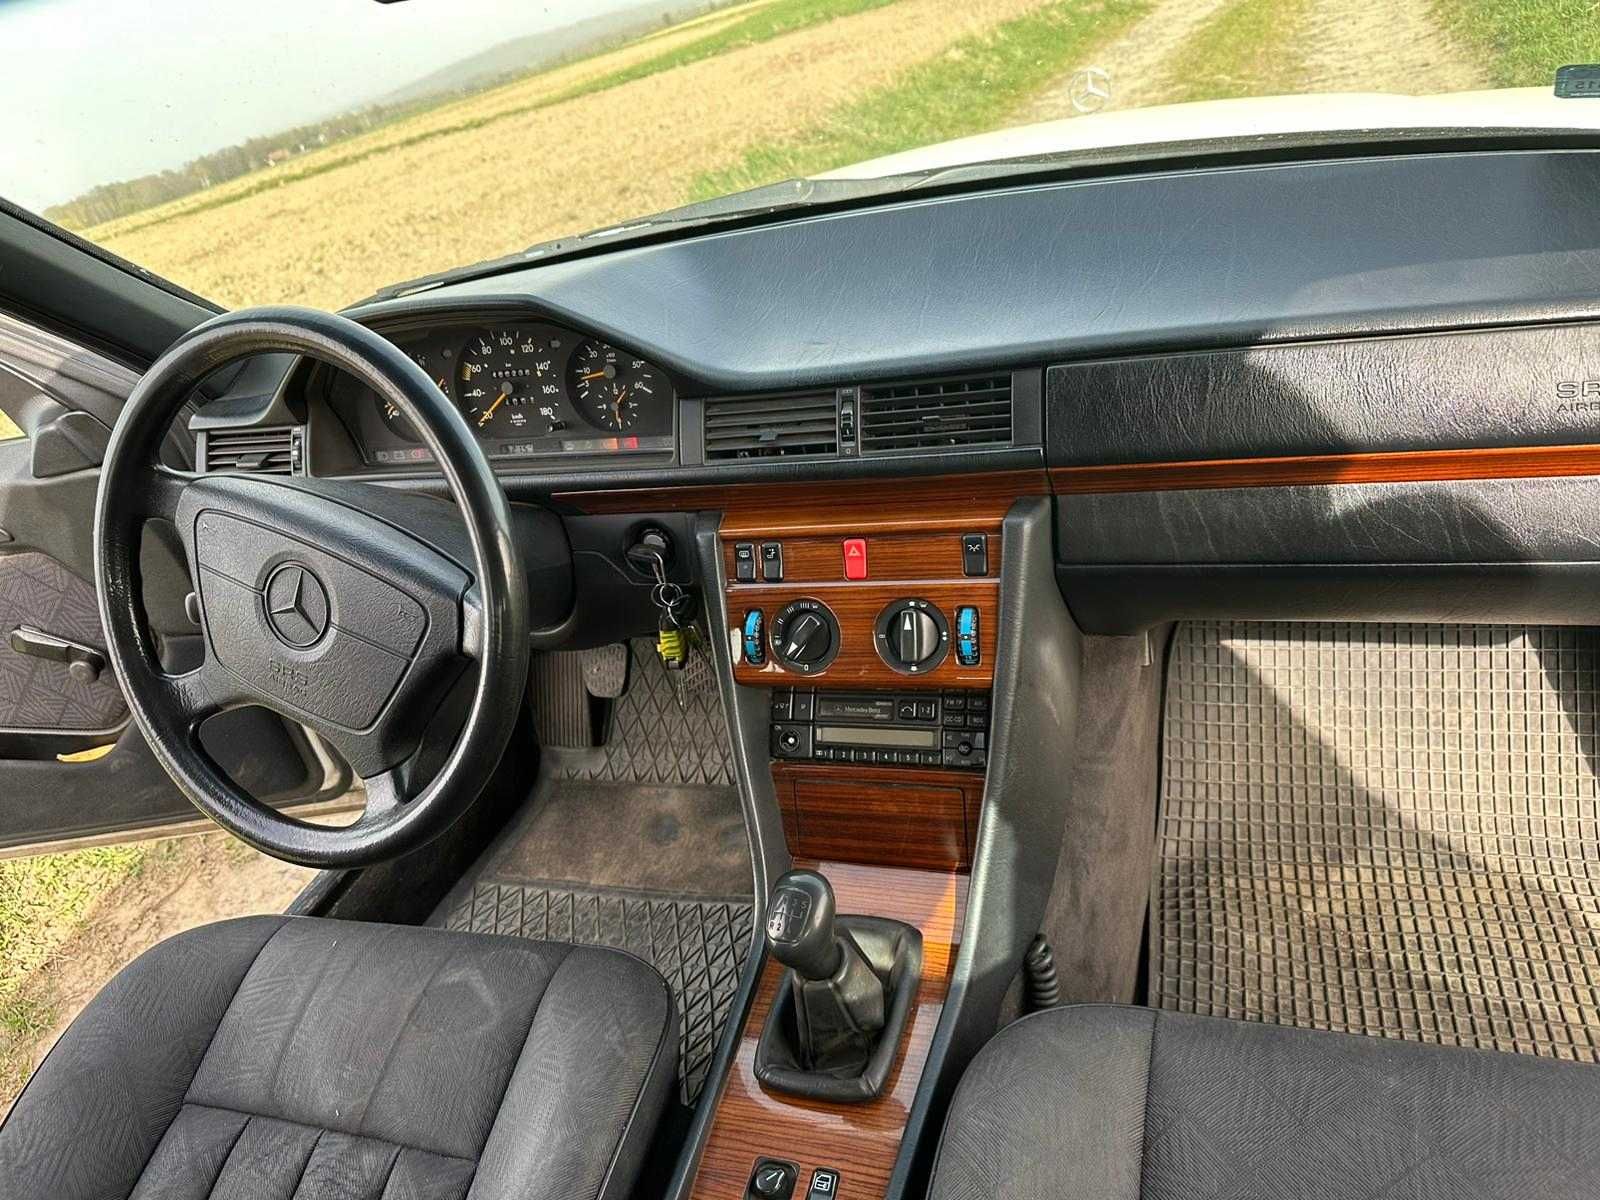 Auto Mercedes-Benz 124 samochód osobowy rok prod. 1995